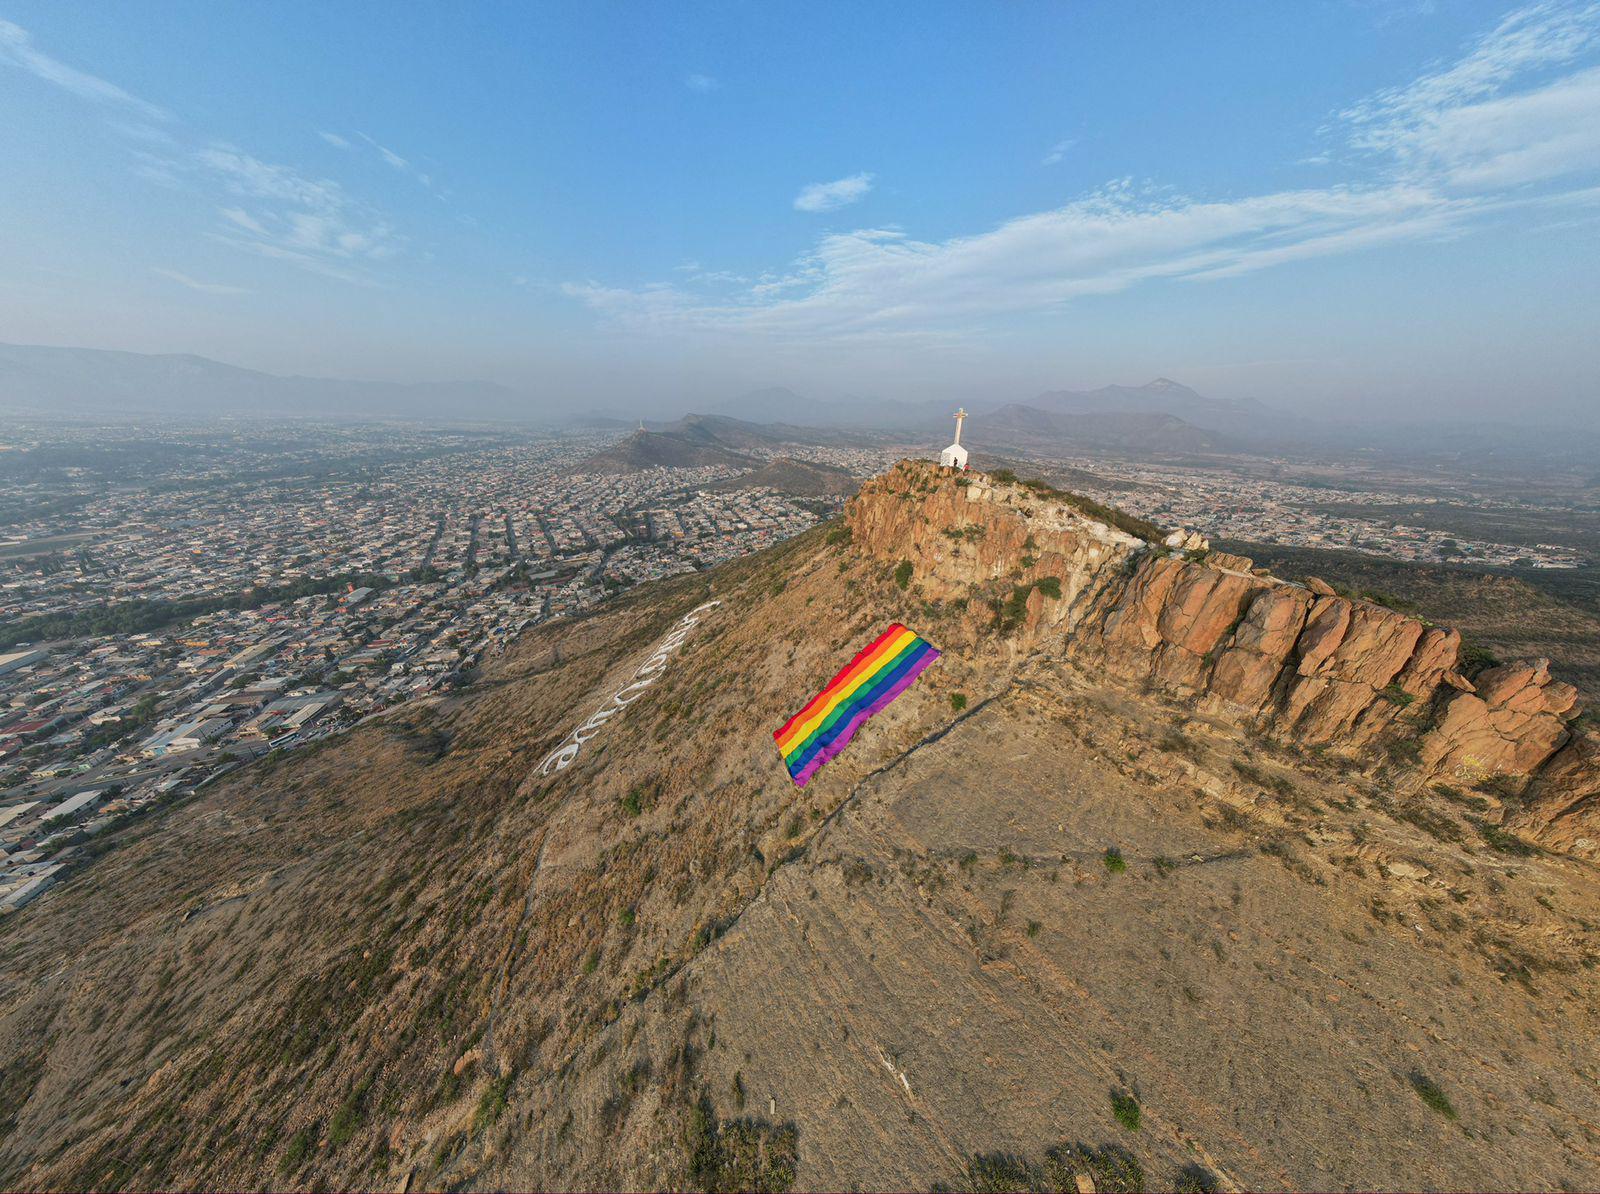 $!La bandera del arcoíris en la cima del Cerro del Pueblo, símbolo de la diversidad en Saltillo.